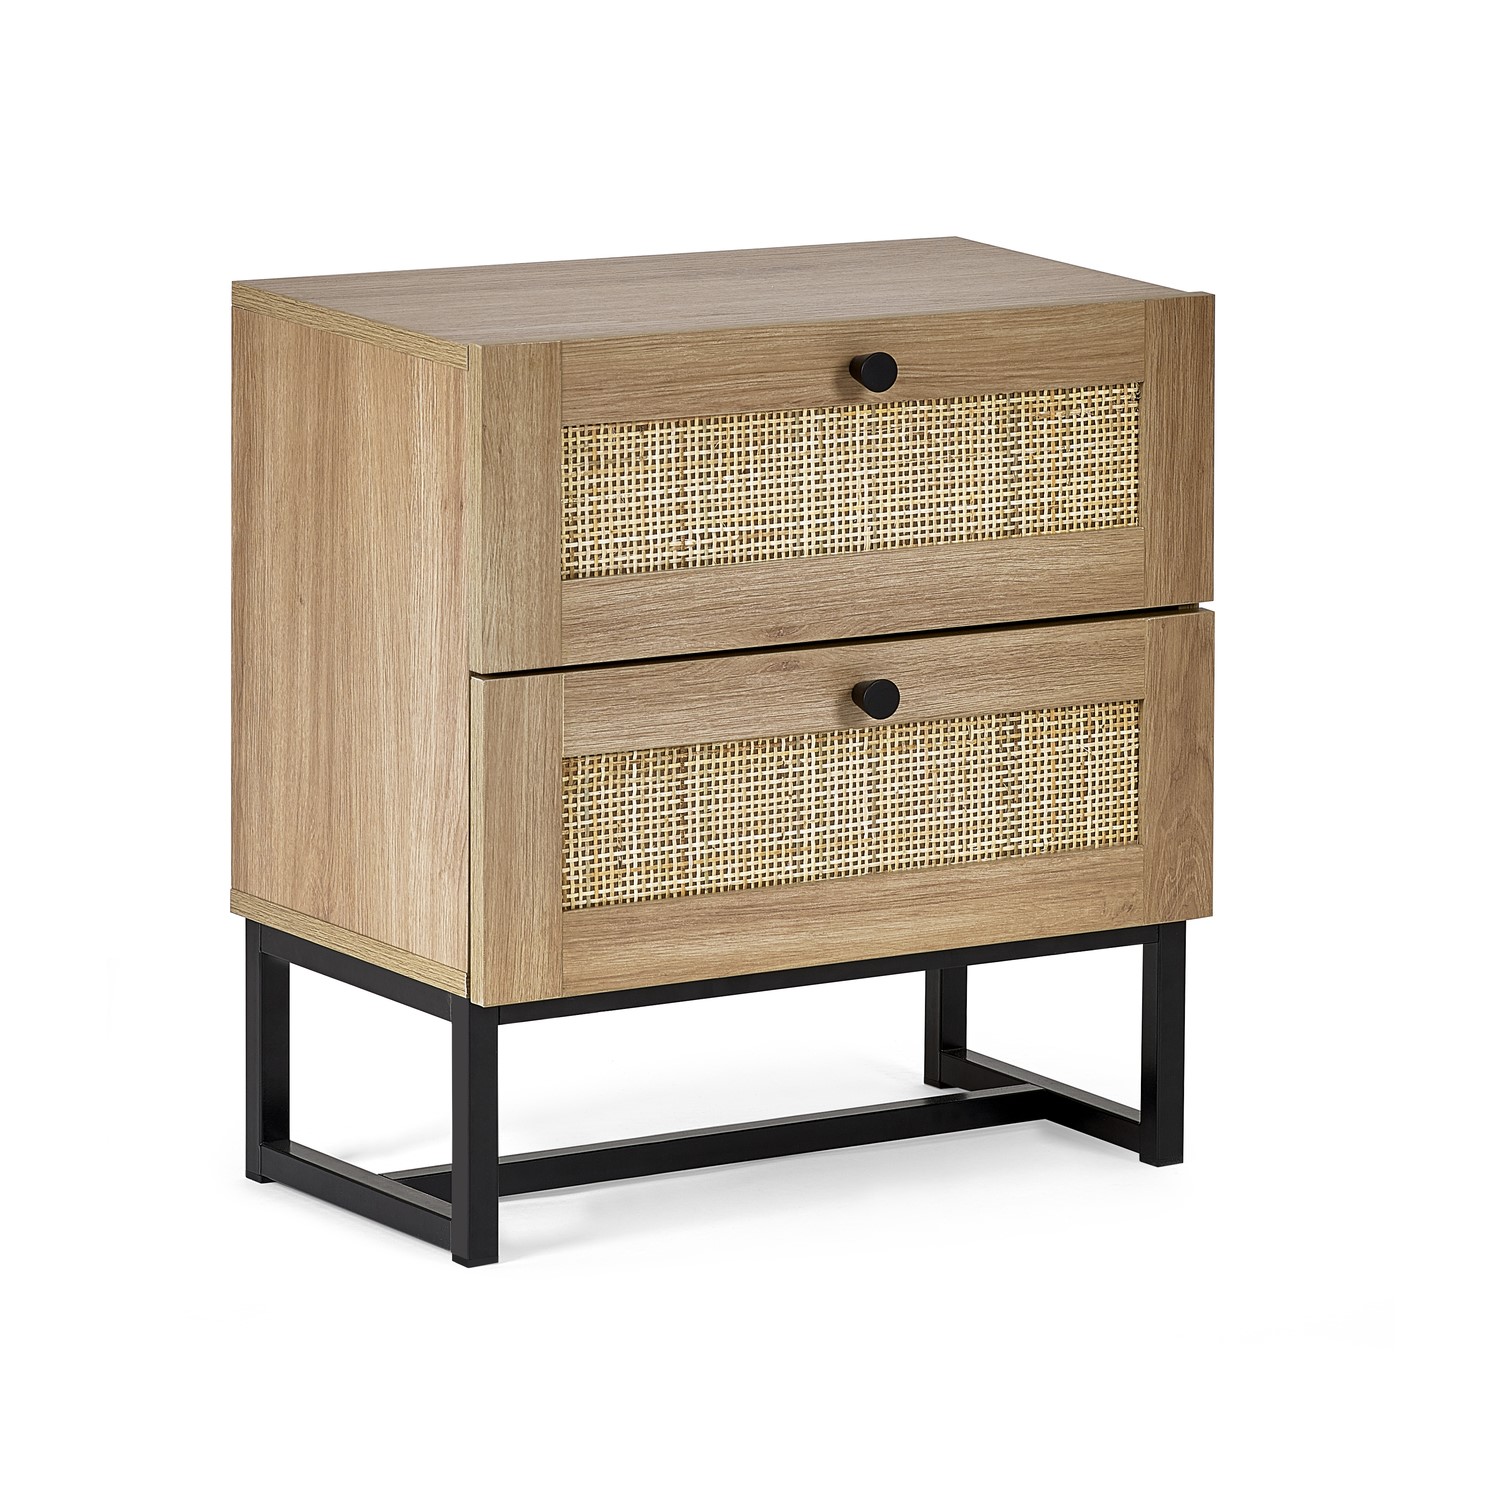 Read more about Rattan 2 drawer bedside table in oak padstow julian bowen